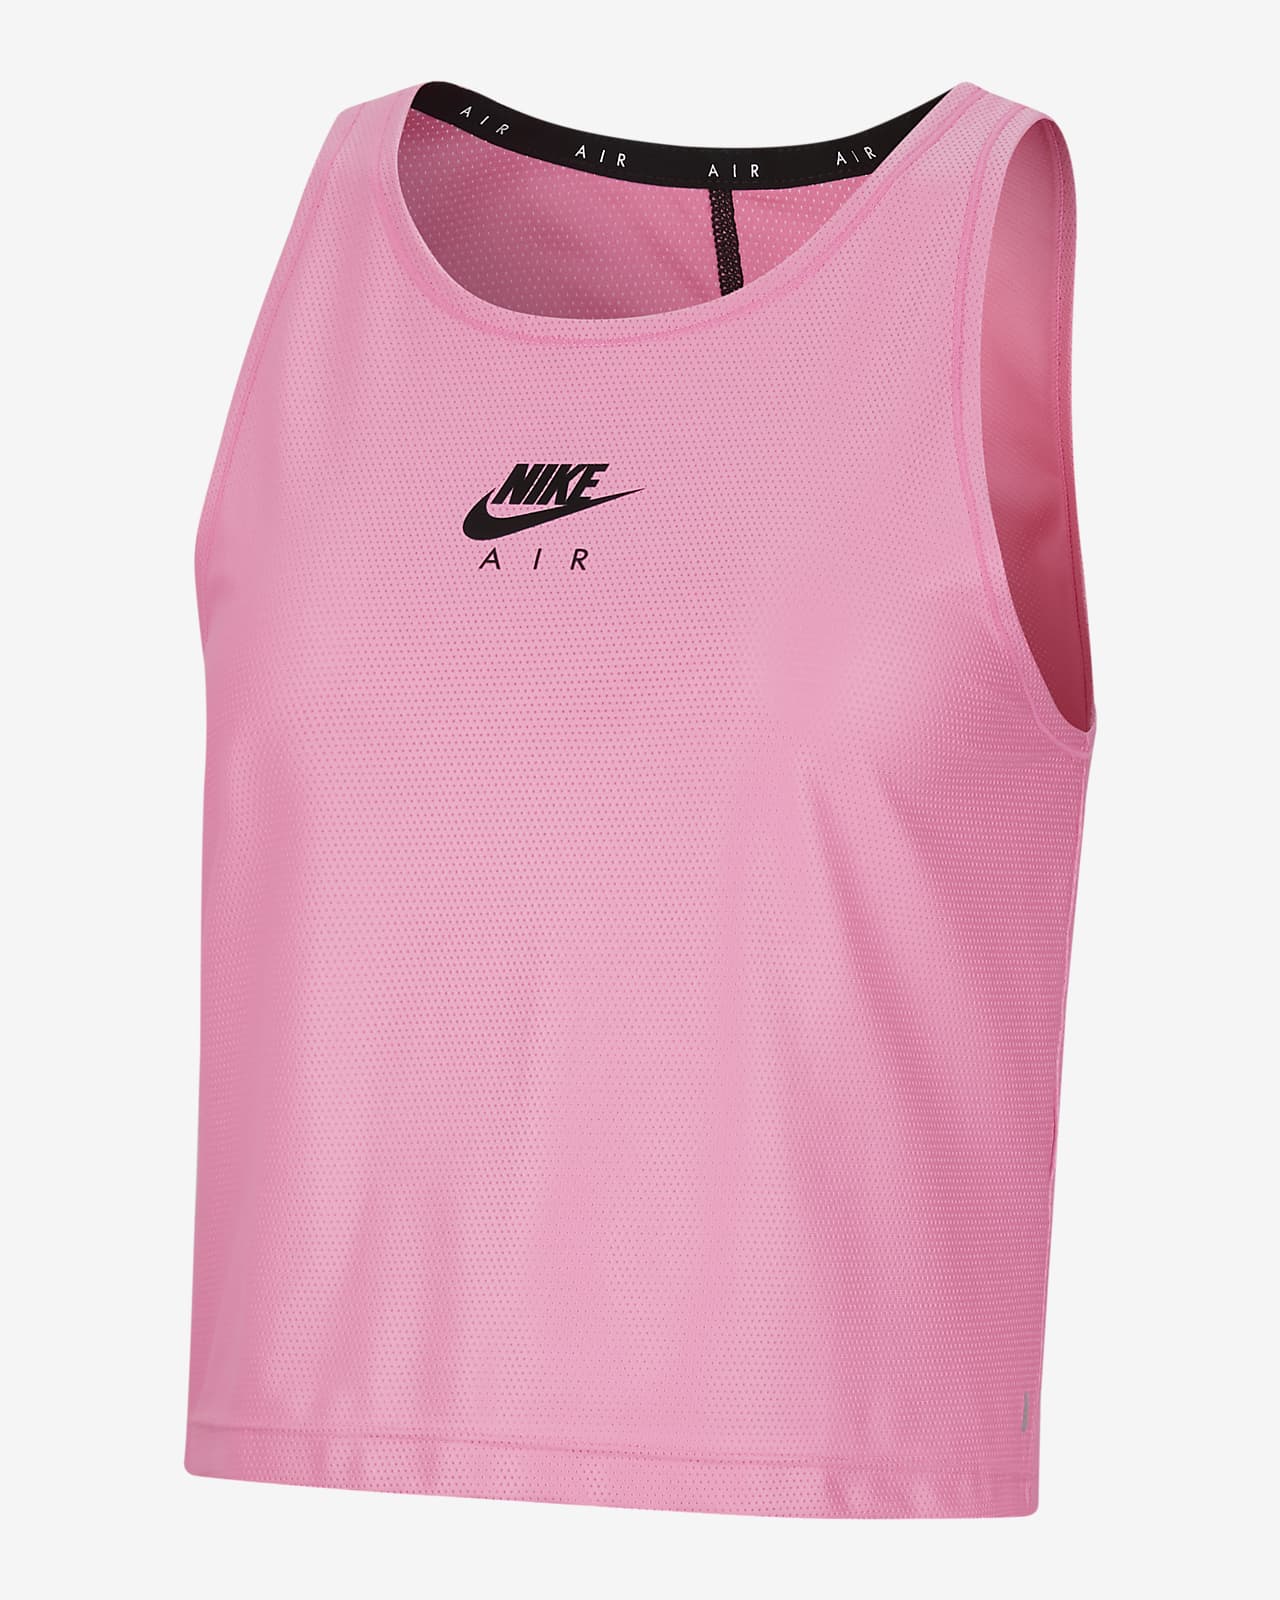 Женская беговая майка Nike Air. Nike RU